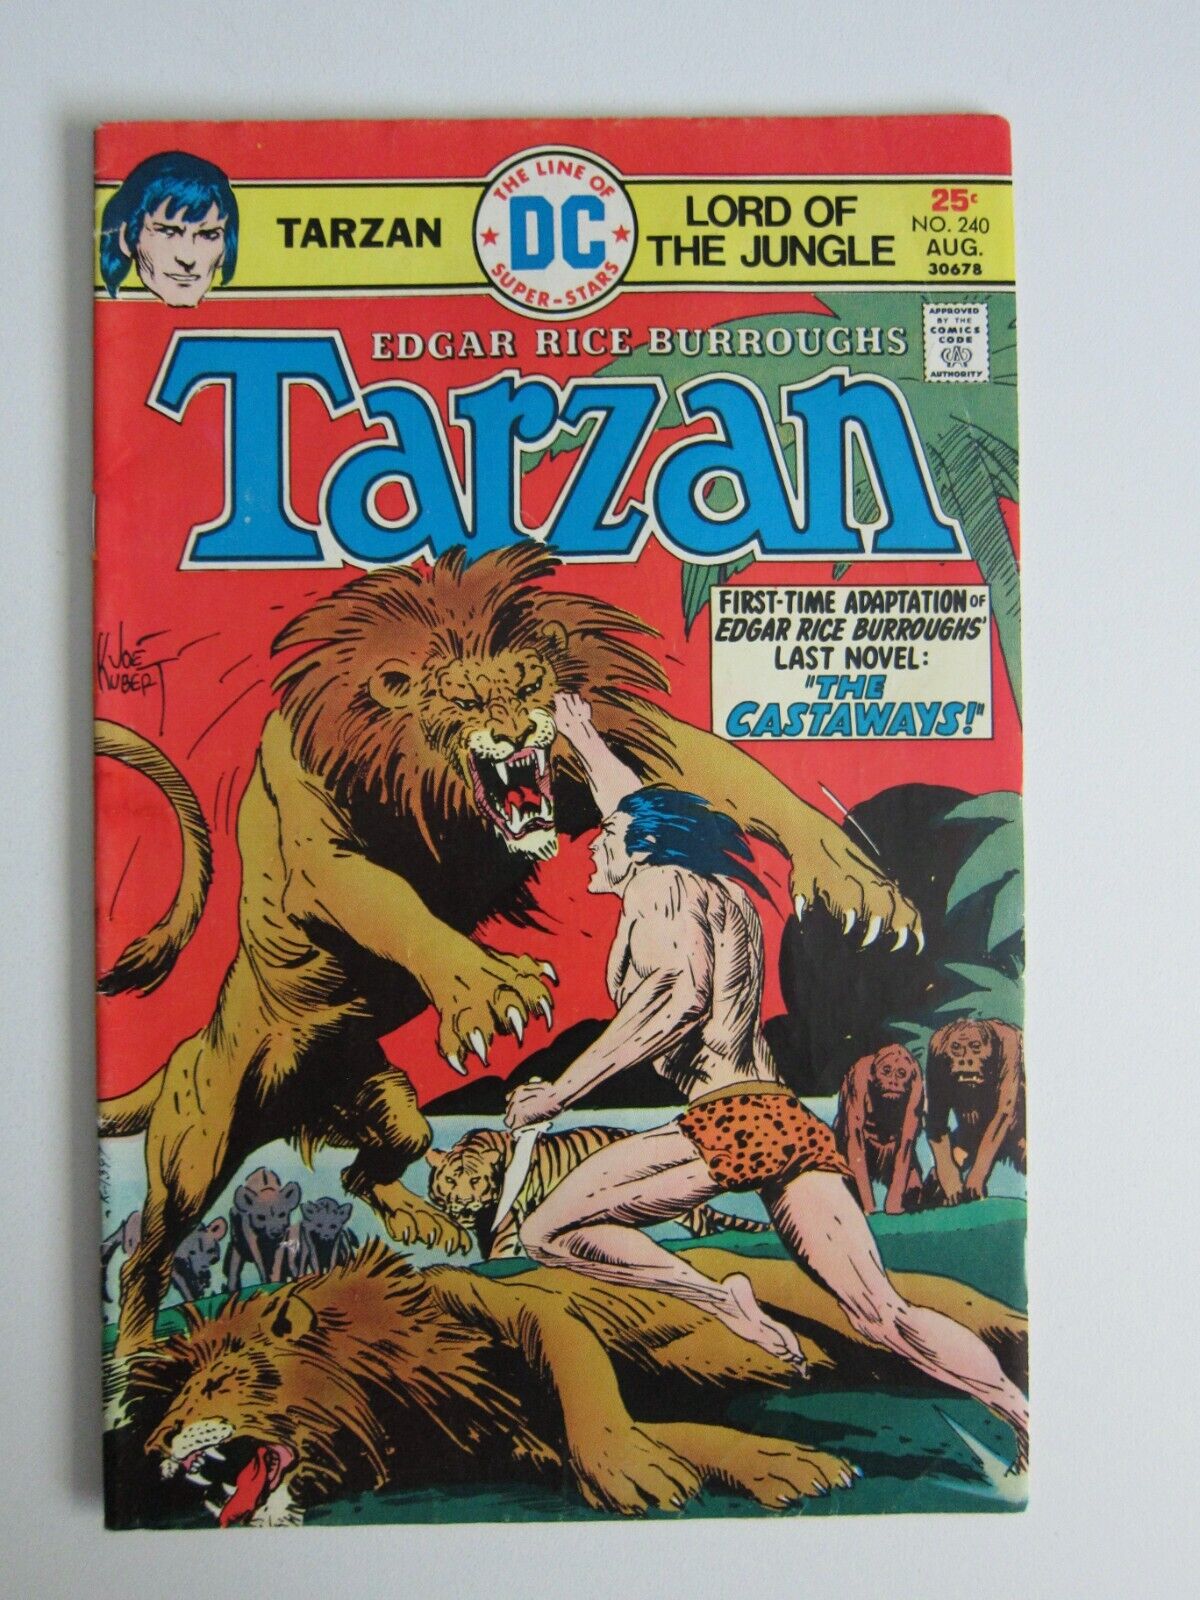 TARZAN #240 VG+ DC COMICS 1975 BRONZE EDGAR RICE BURROUGHS JOE KUBERT COVER ART